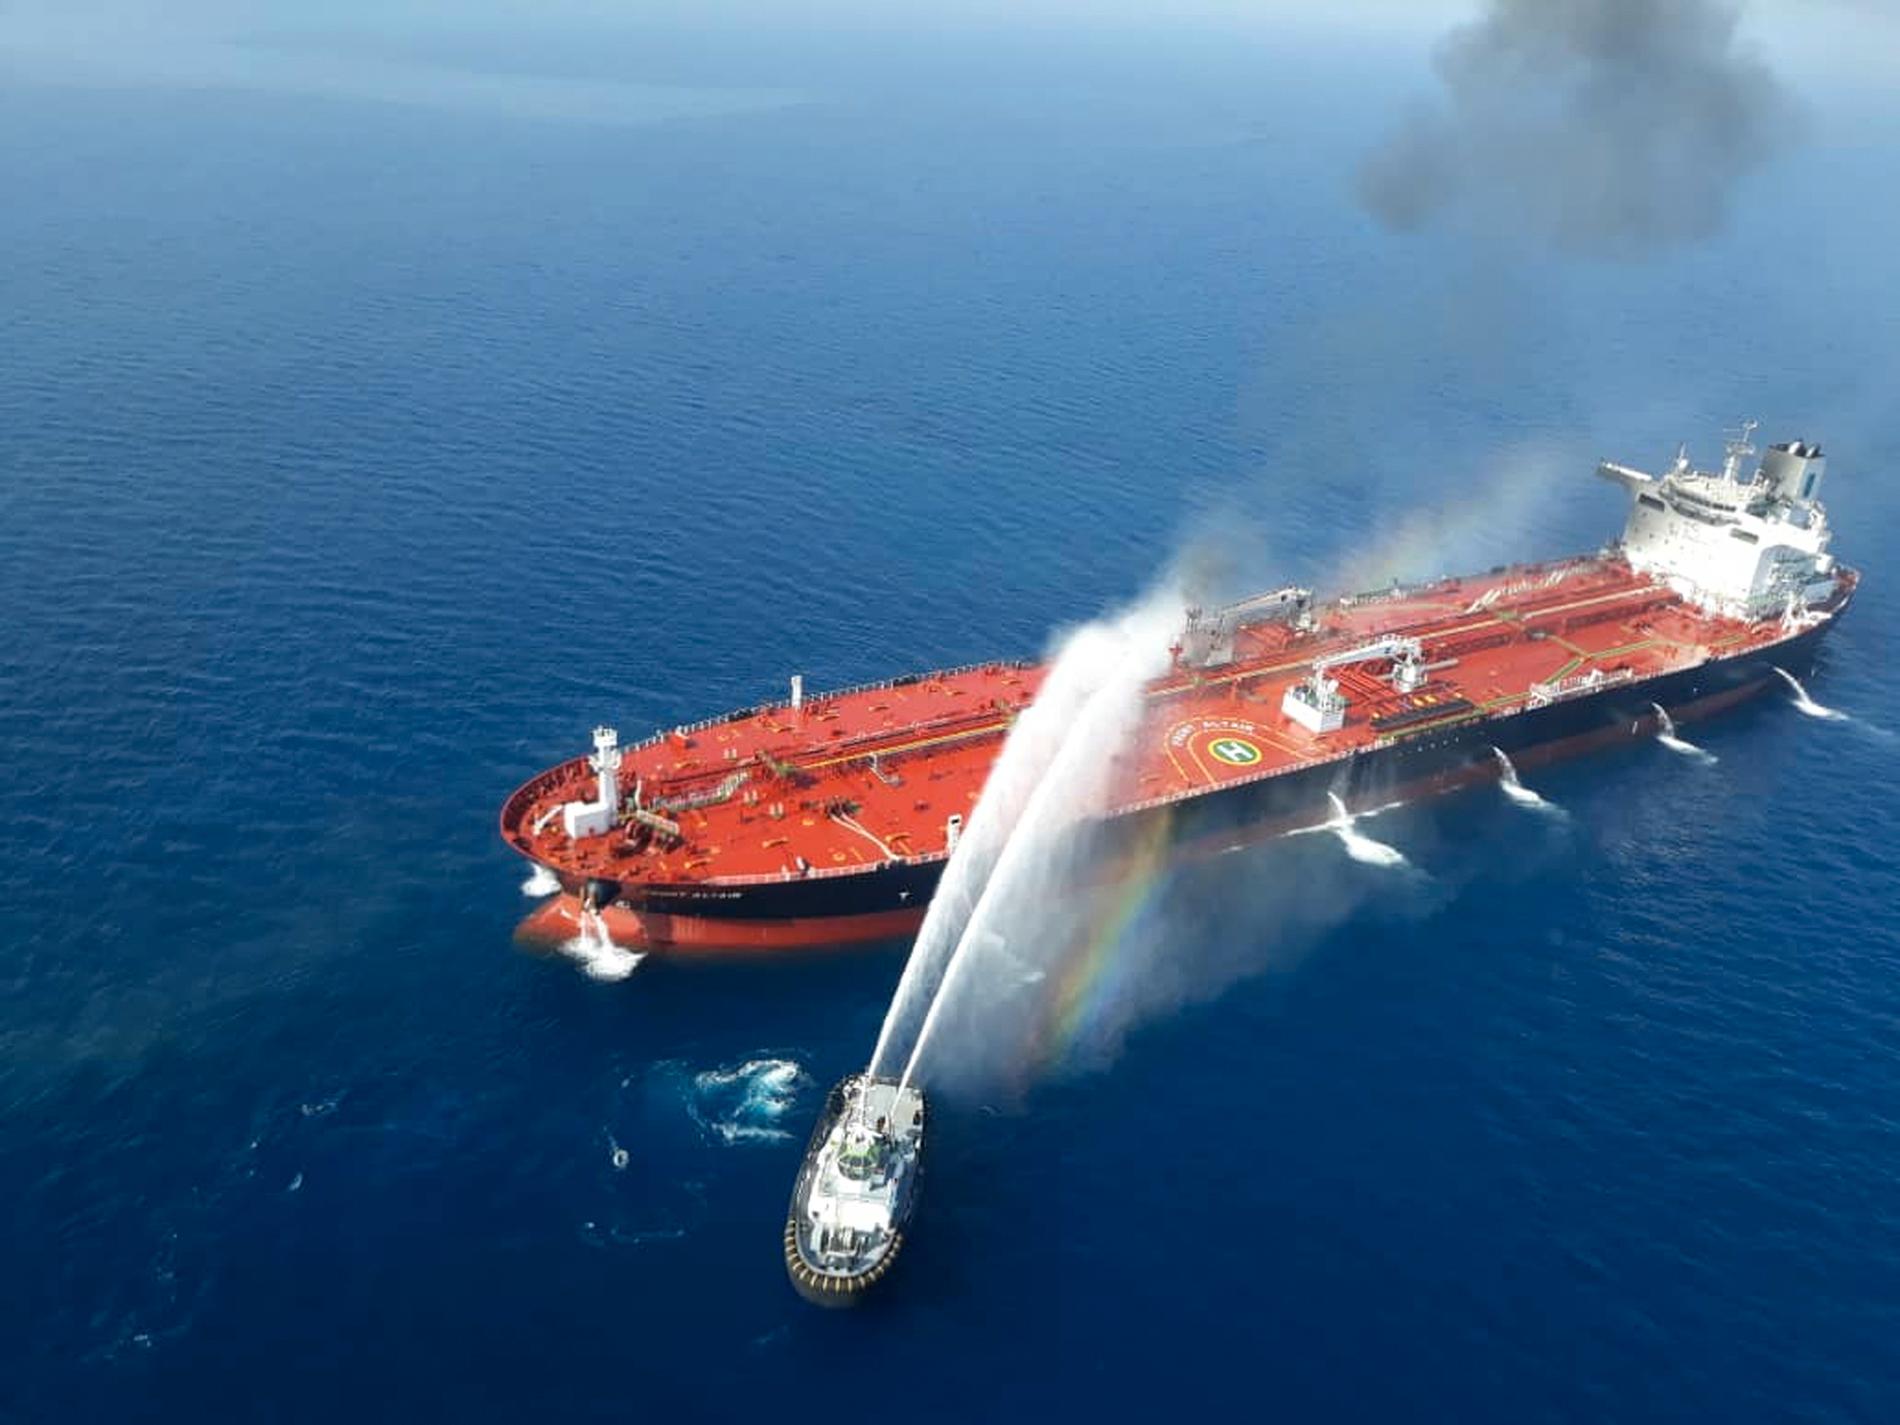 En båt från den iranska flottan i släckningsarbete vid ett av de attackerade fartygen. Bilden publicerades av den iranska nyhetsbyrån Tasnim.